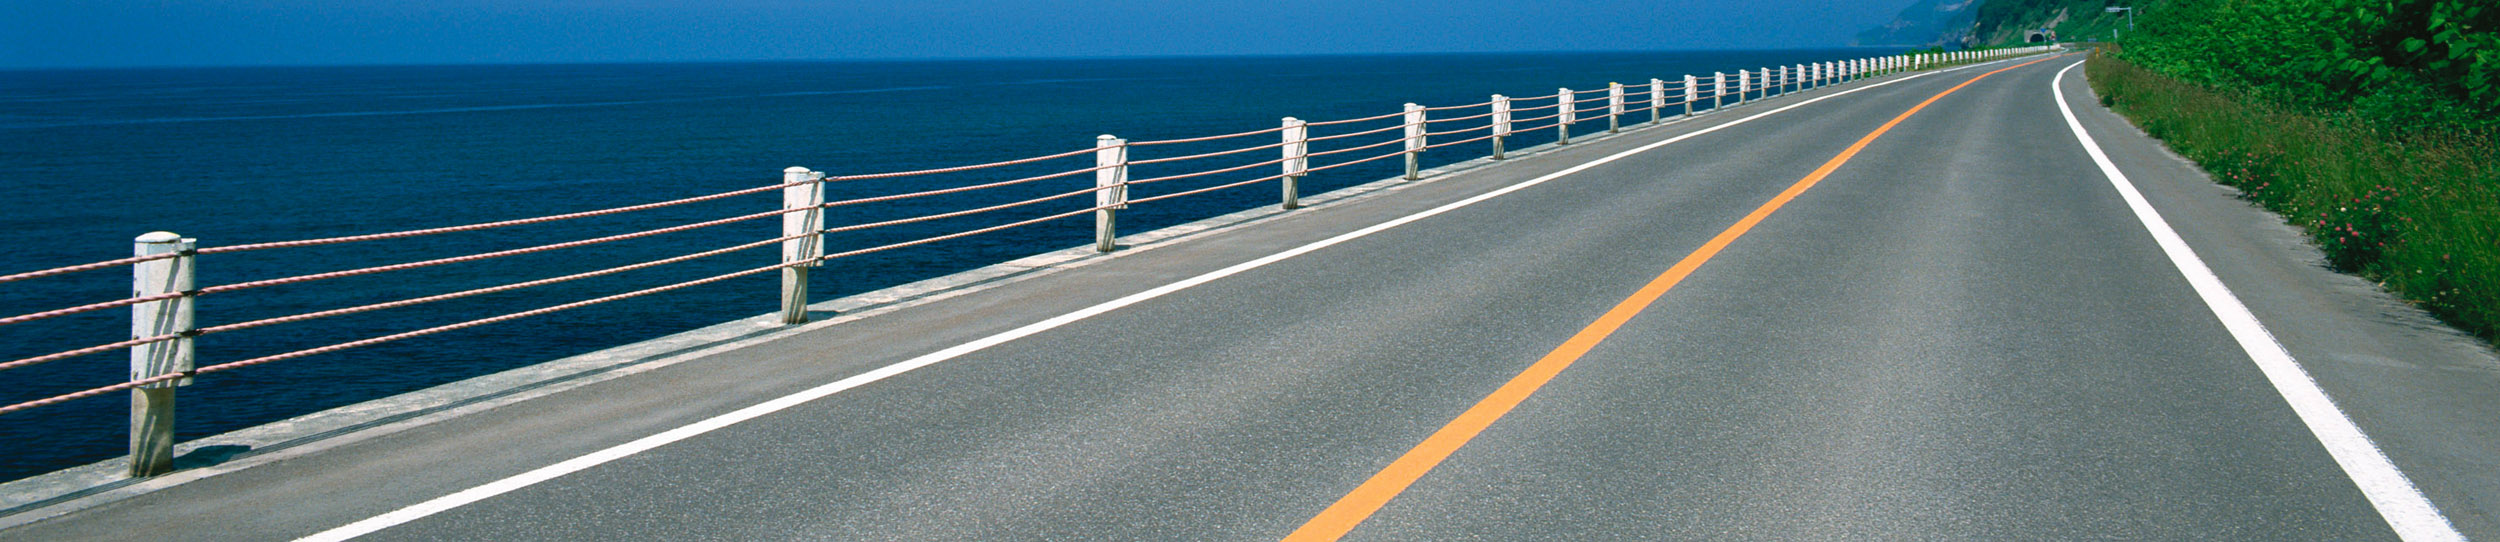 積水樹脂の路面標示材・カラー路面標示材、路面サイン